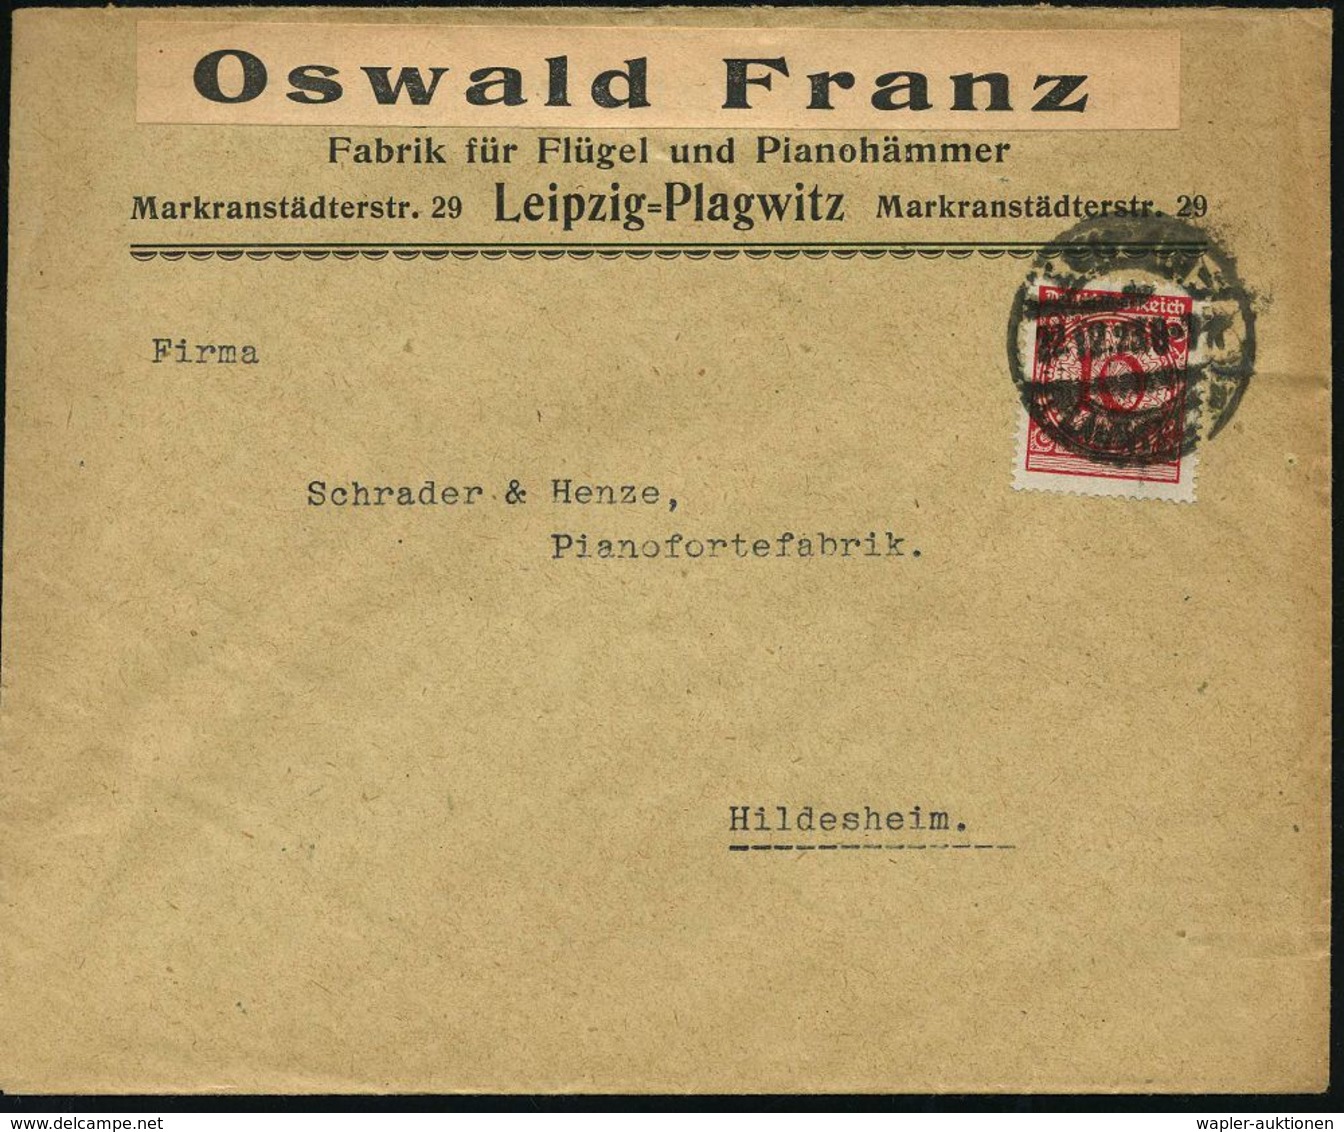 MUSIK-INSTRUMENTE ALLGEMEIN : Leipzig-Plagwitz 1923 (22.12.) überklebter Firmenbf.: Oswald Franz, Fabrik Für Flügel U. P - Music